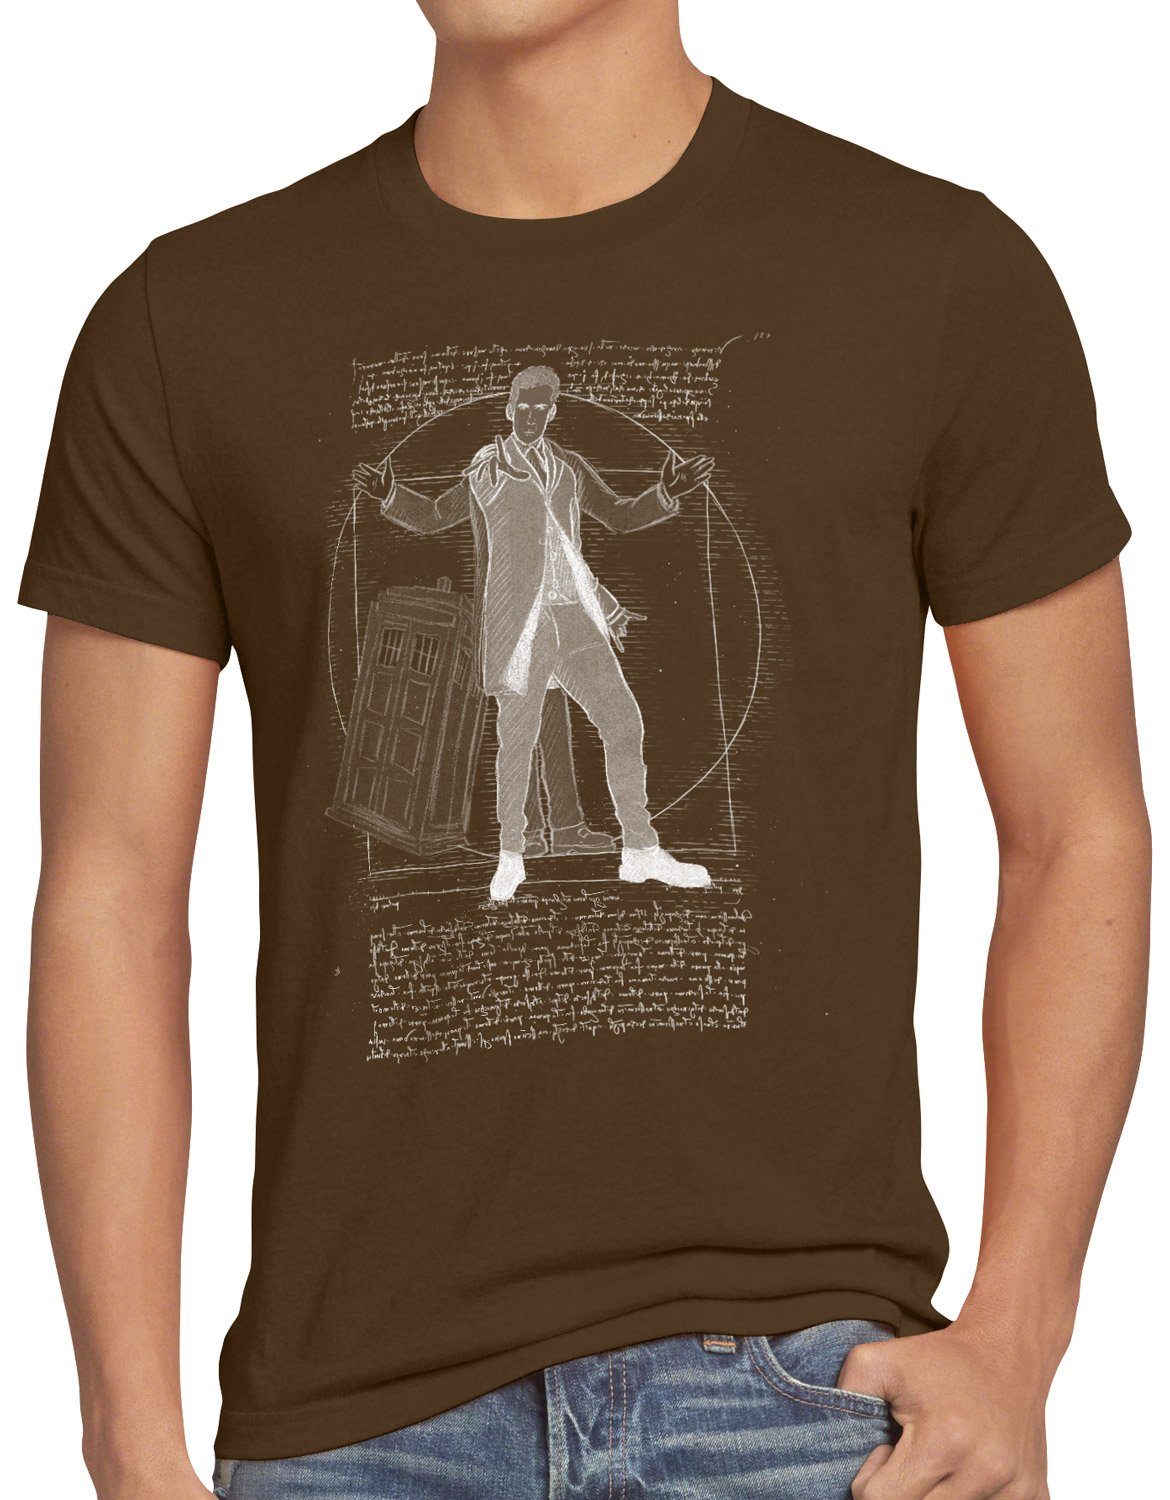 zeitreise notrufzelle braun Doktor polizei Herren Vitruvianischer serie style3 Print-Shirt T-Shirt